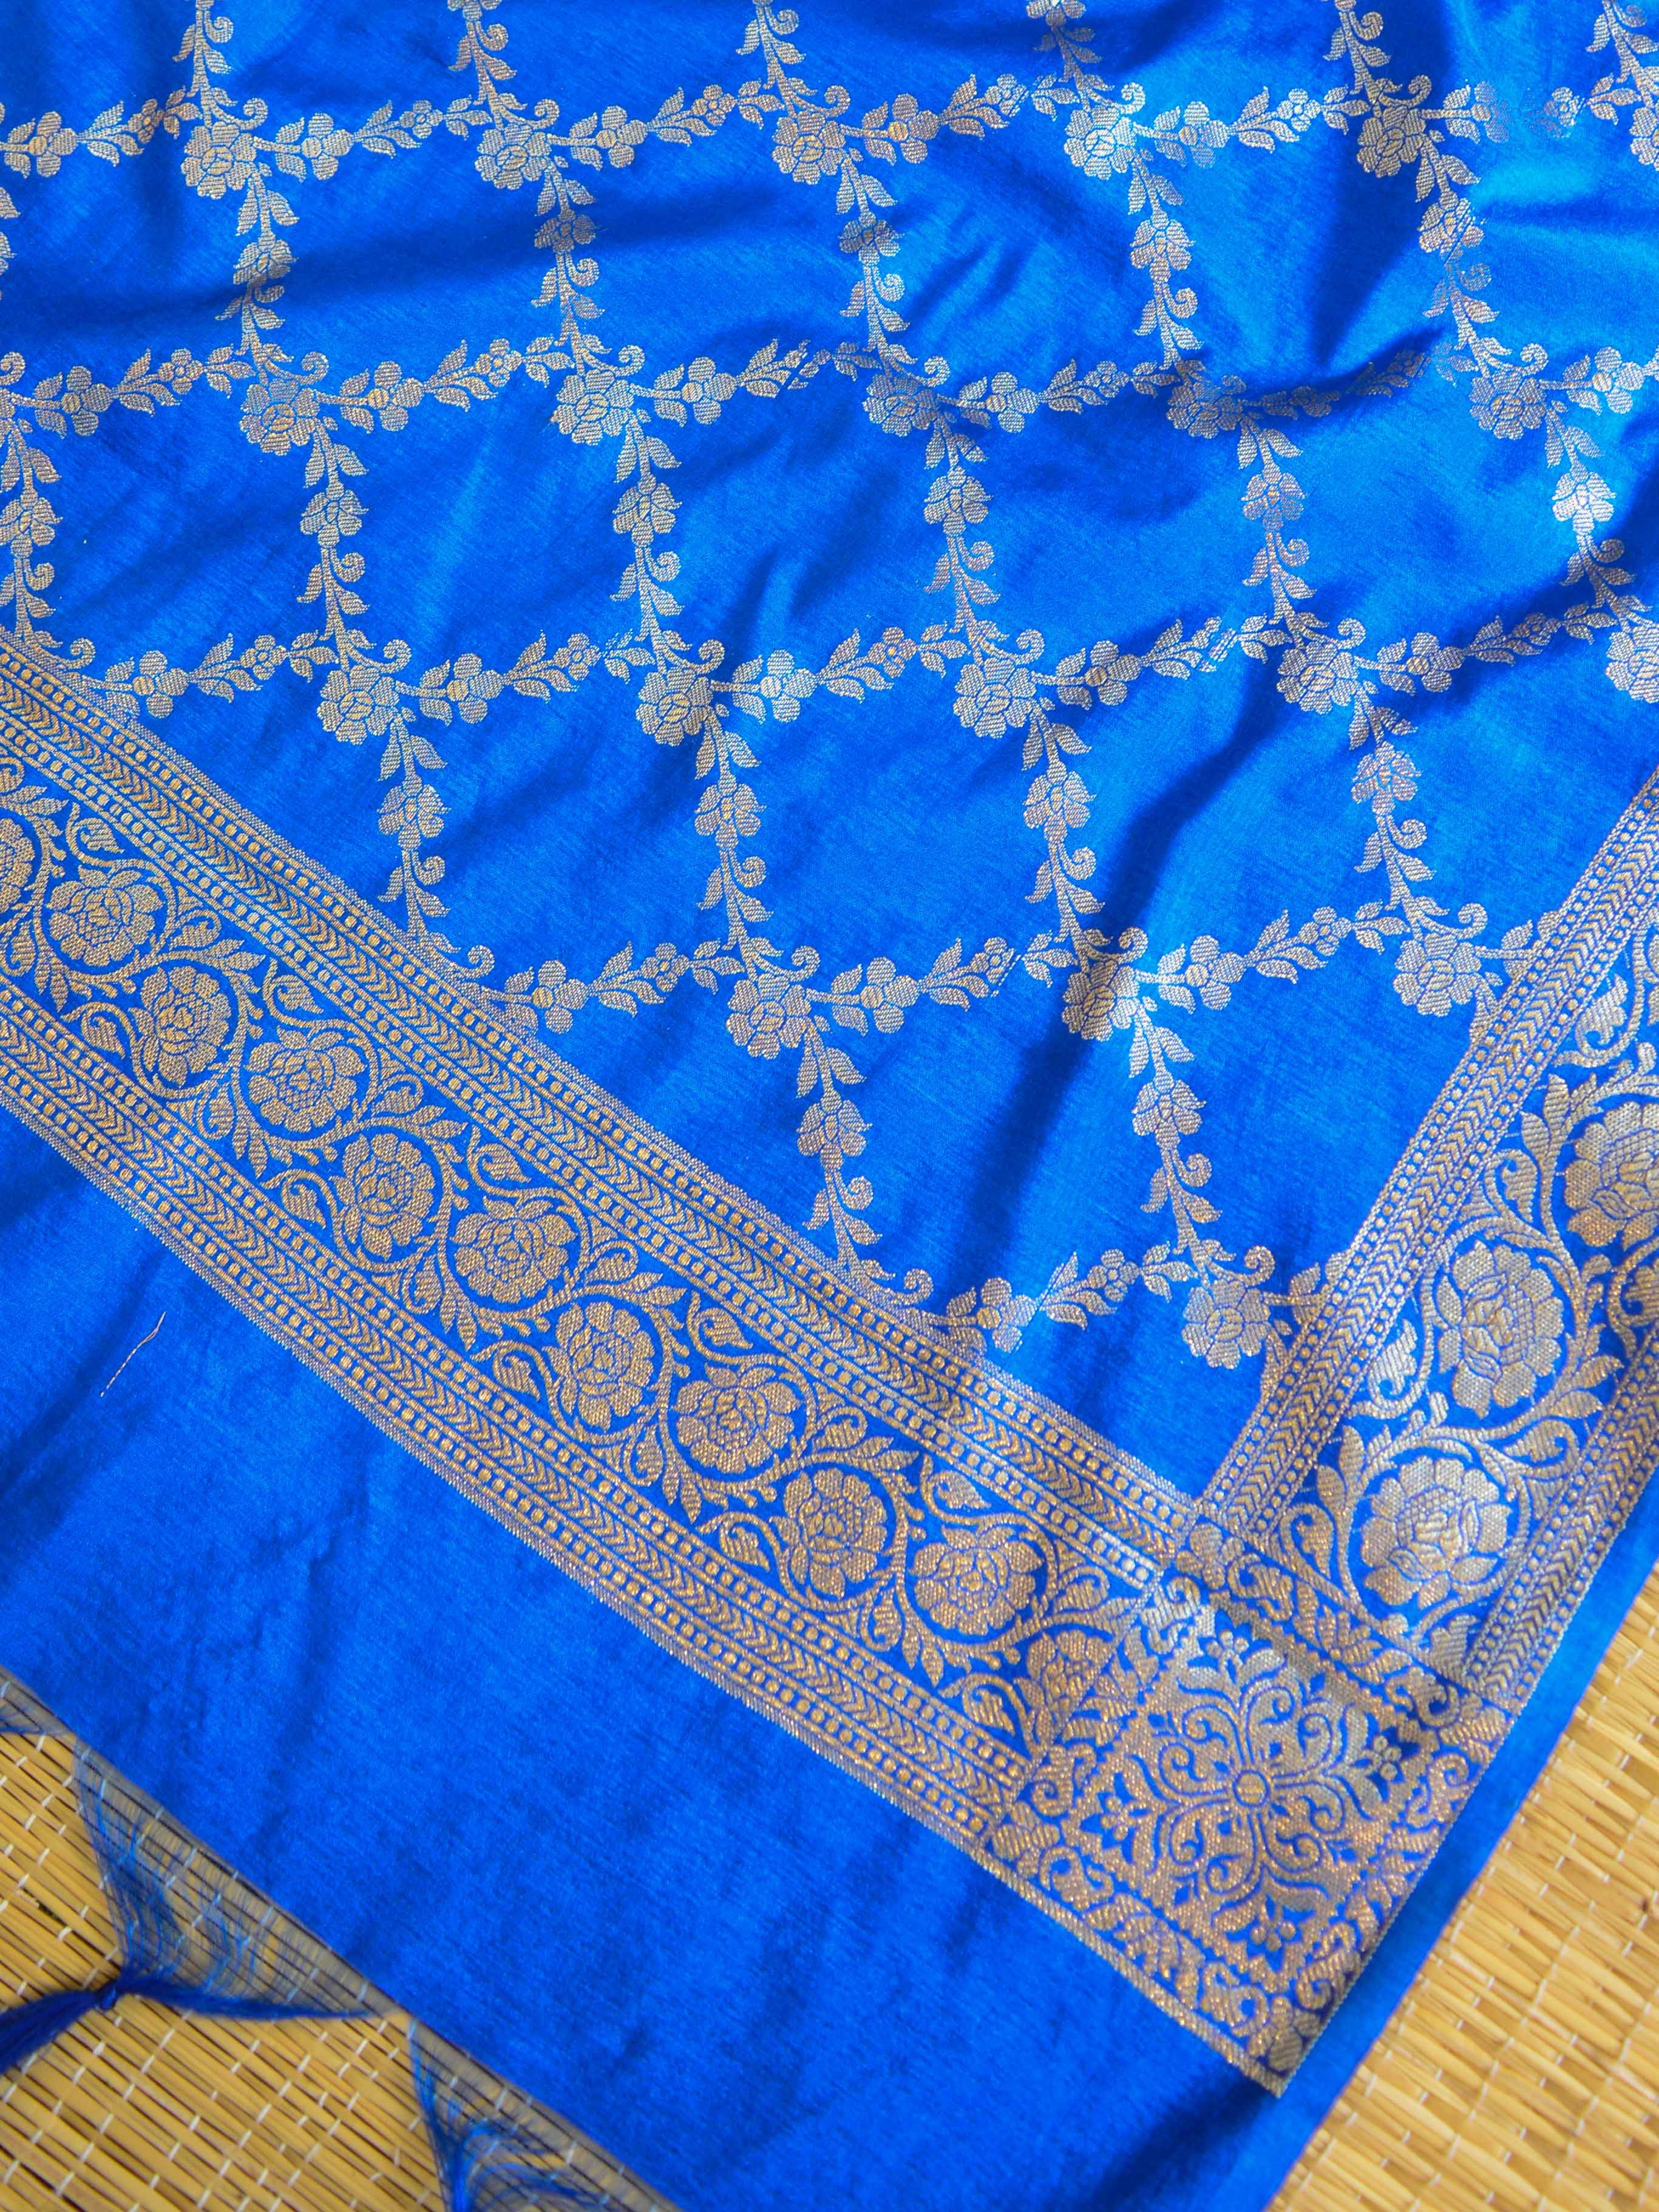 Banarasee Handwoven Semi-Silk Salwar Kameez Fabric With Zari Buta Design-Blue